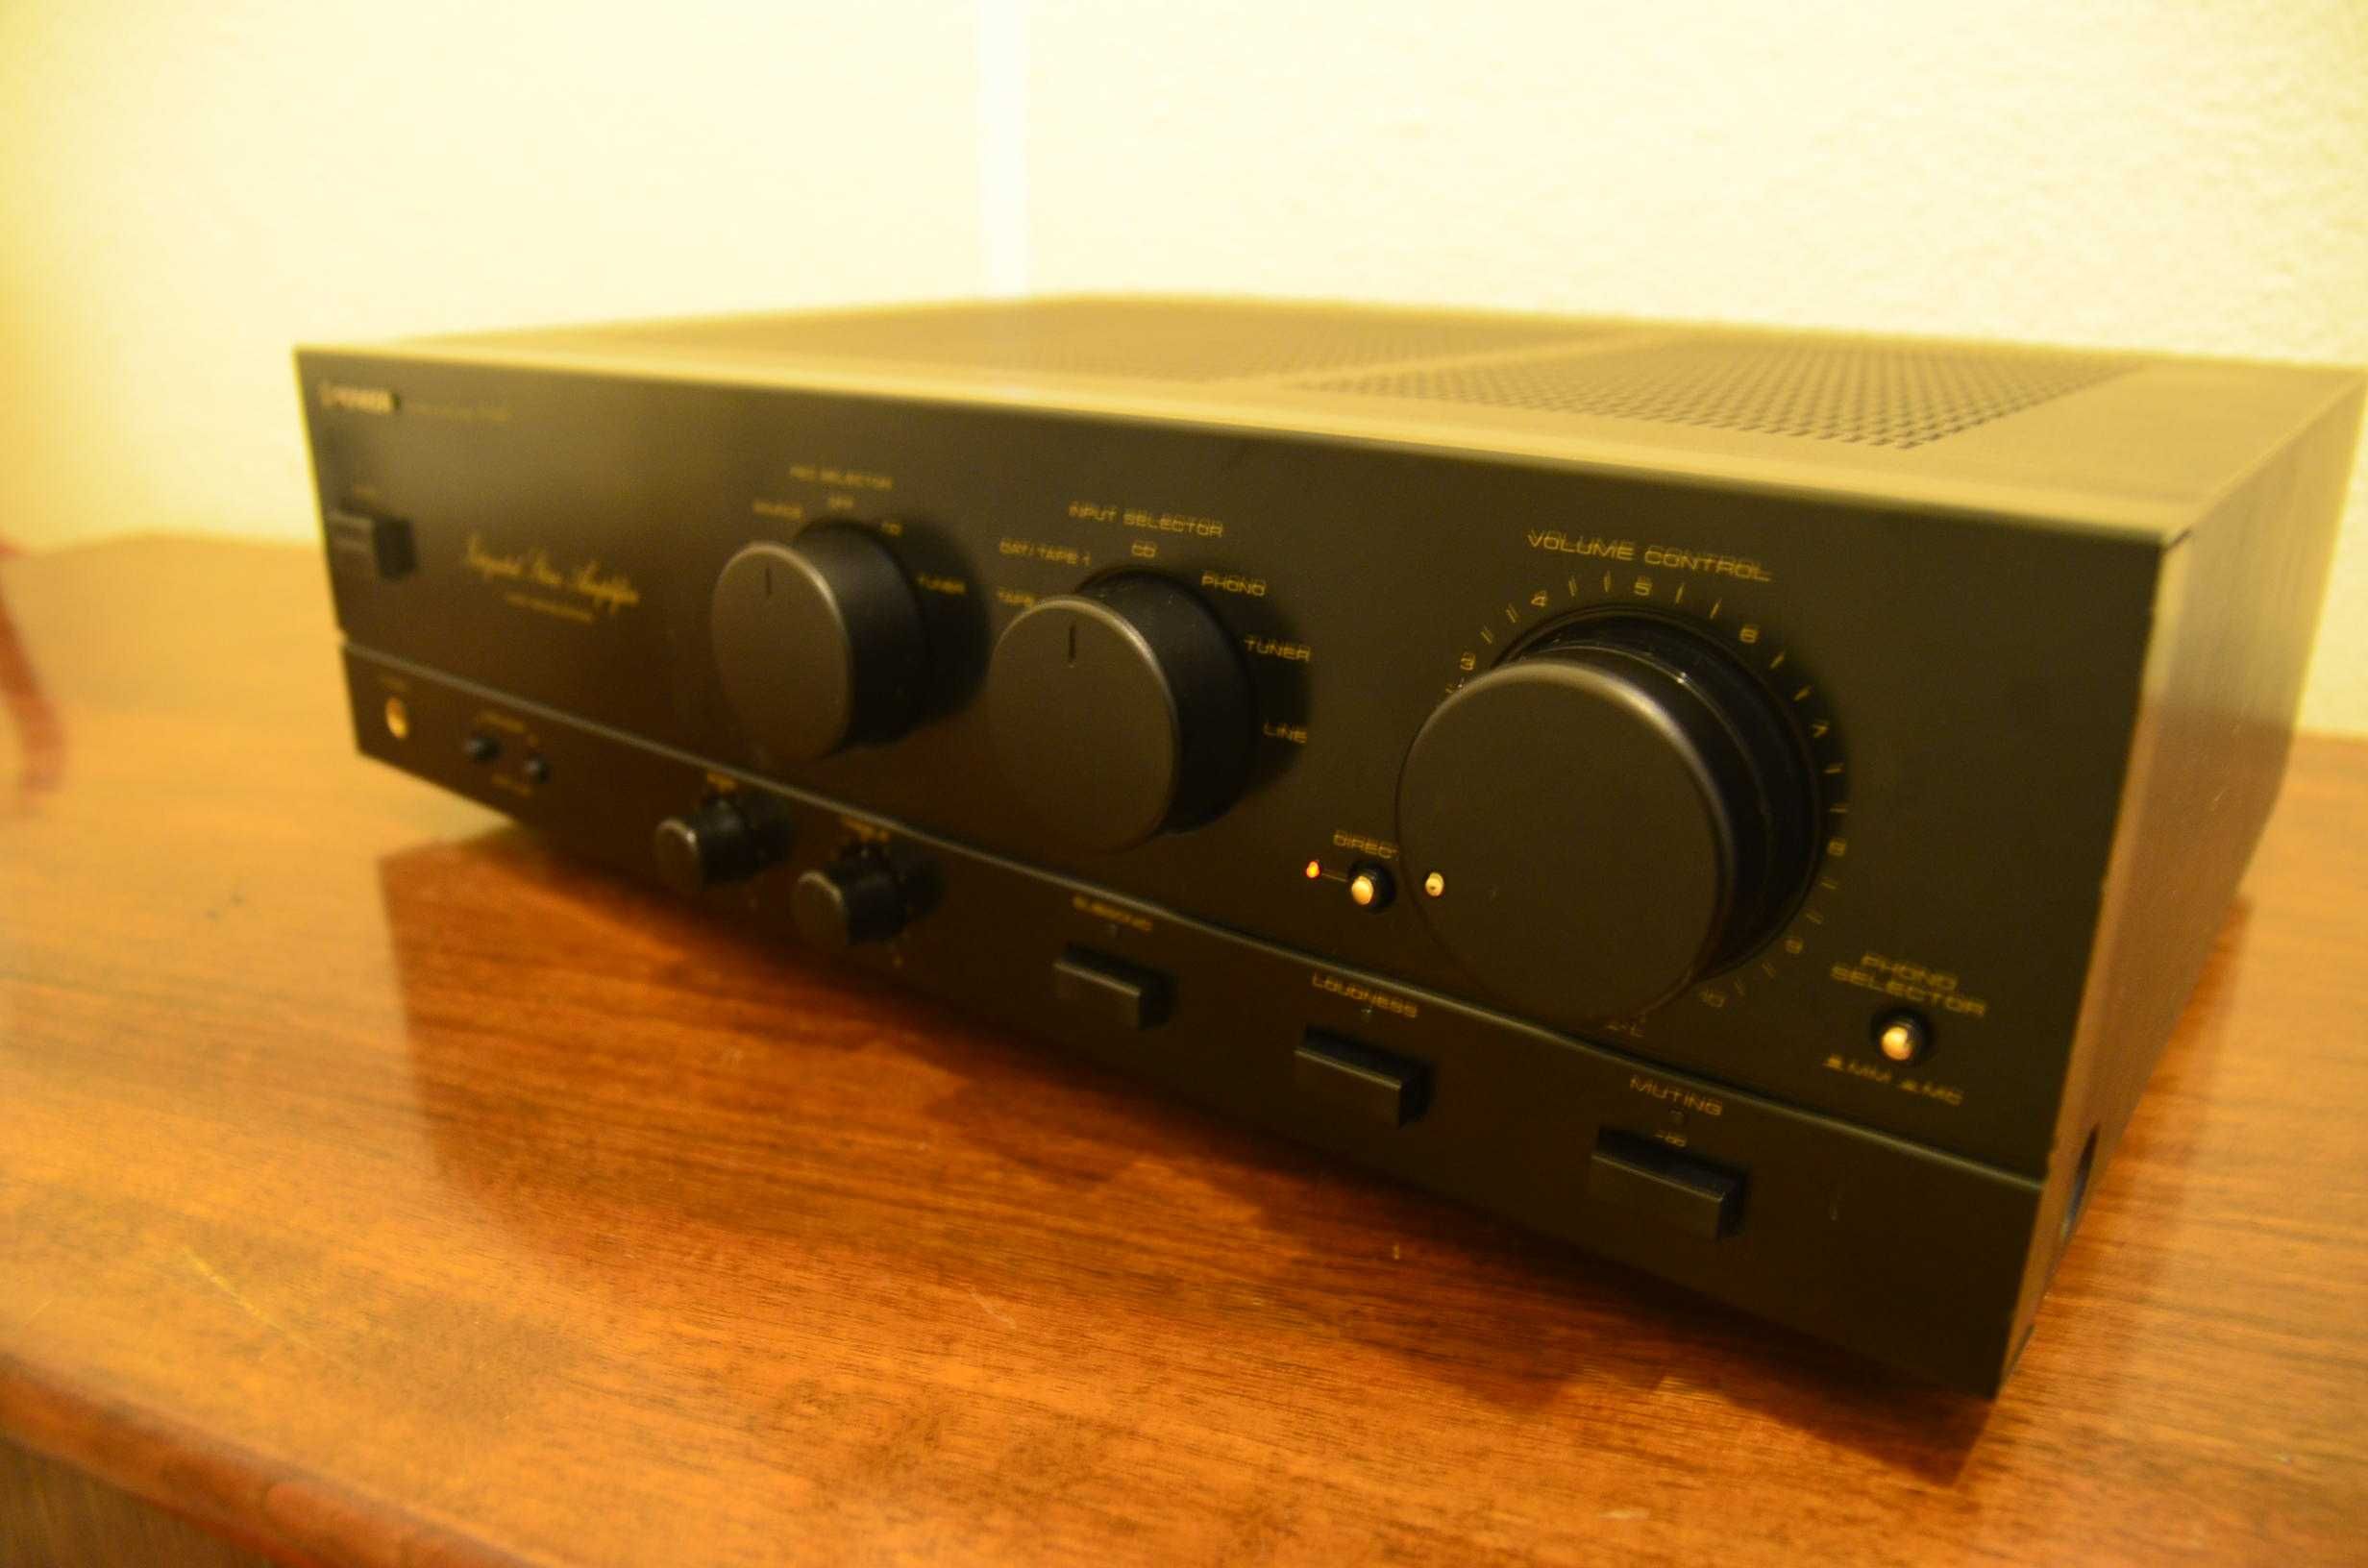 Amplificador Pioneer A447